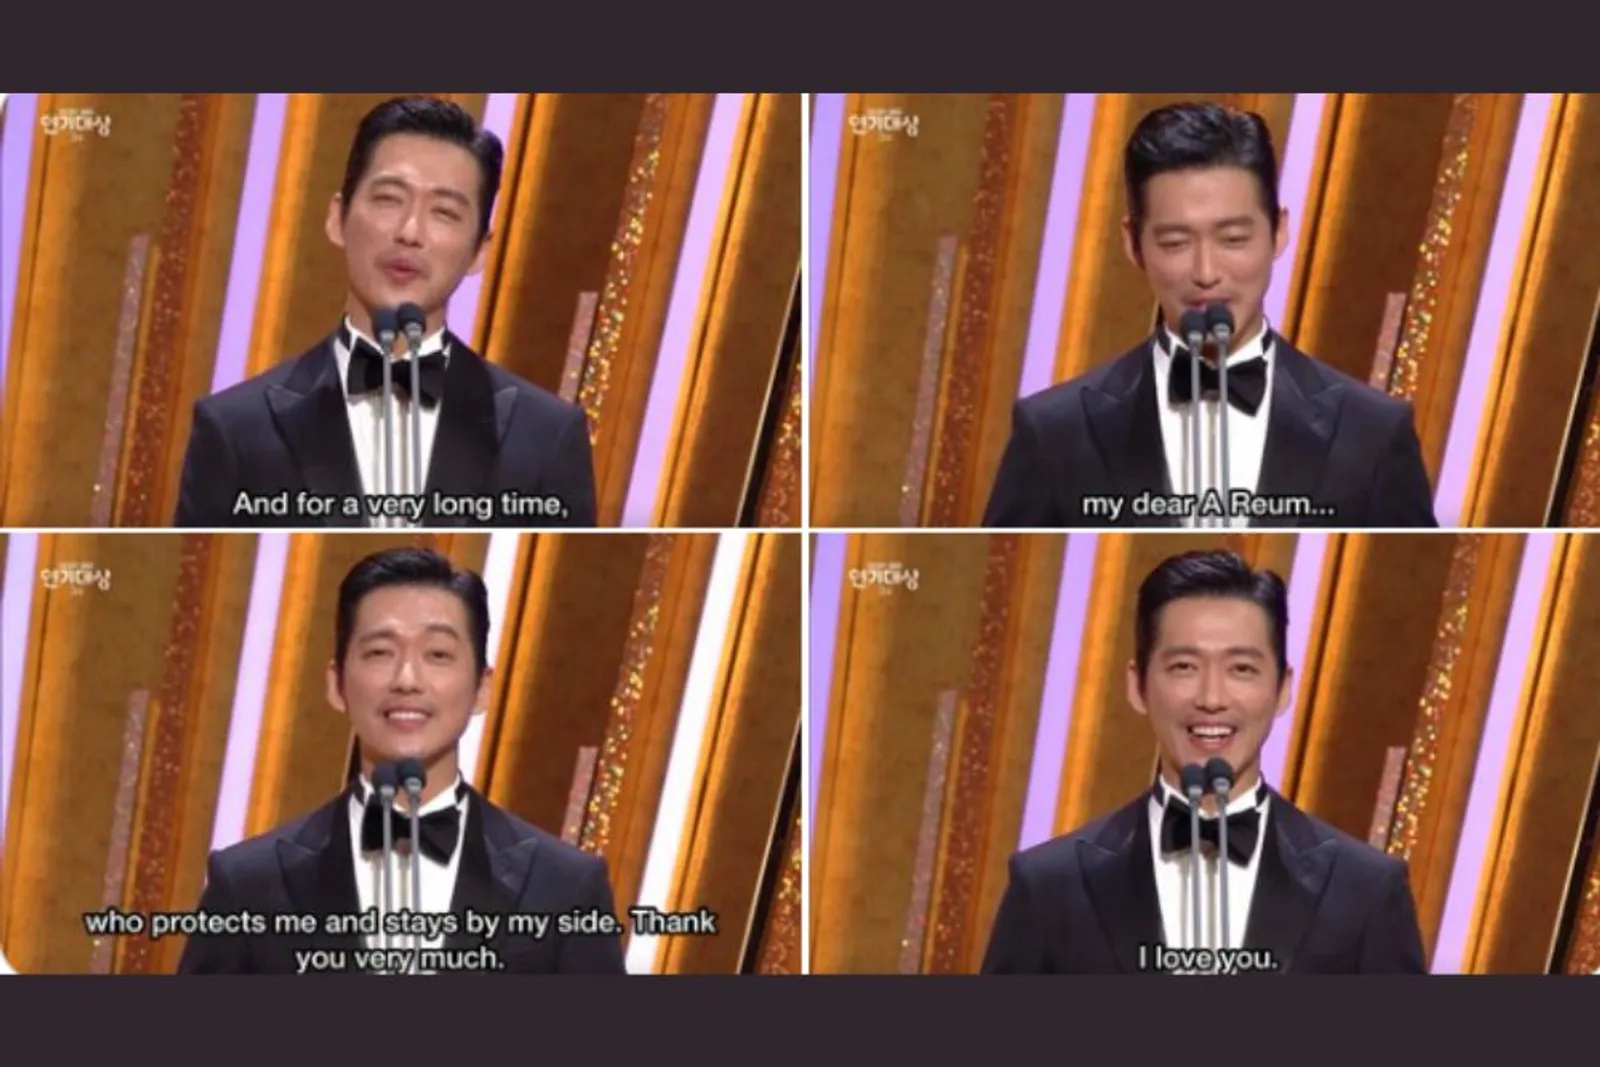 5 Aktor Korea yang Ucapkan Terima Kasih ke Pasangan Saat Menang Awards